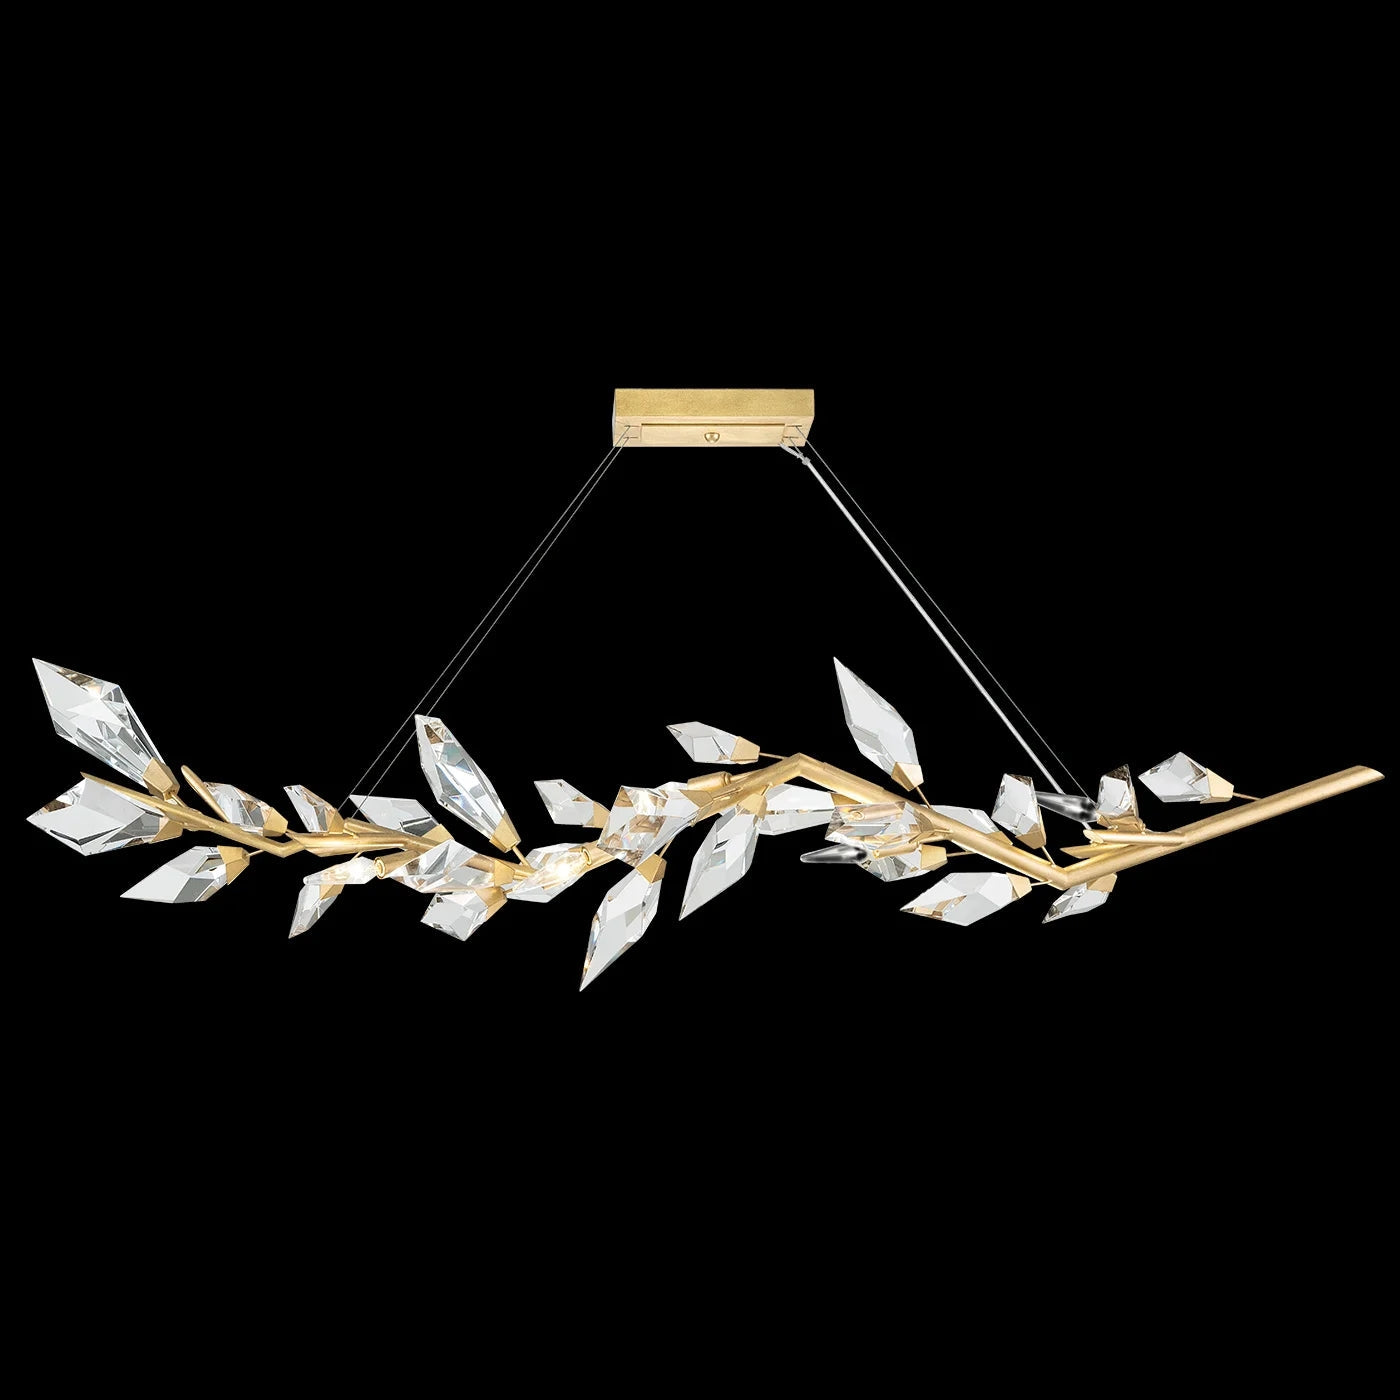 Aurelia Crystal Prism Linear Pendant Light 63.5”L  Kevin Studio Gold Leaf  